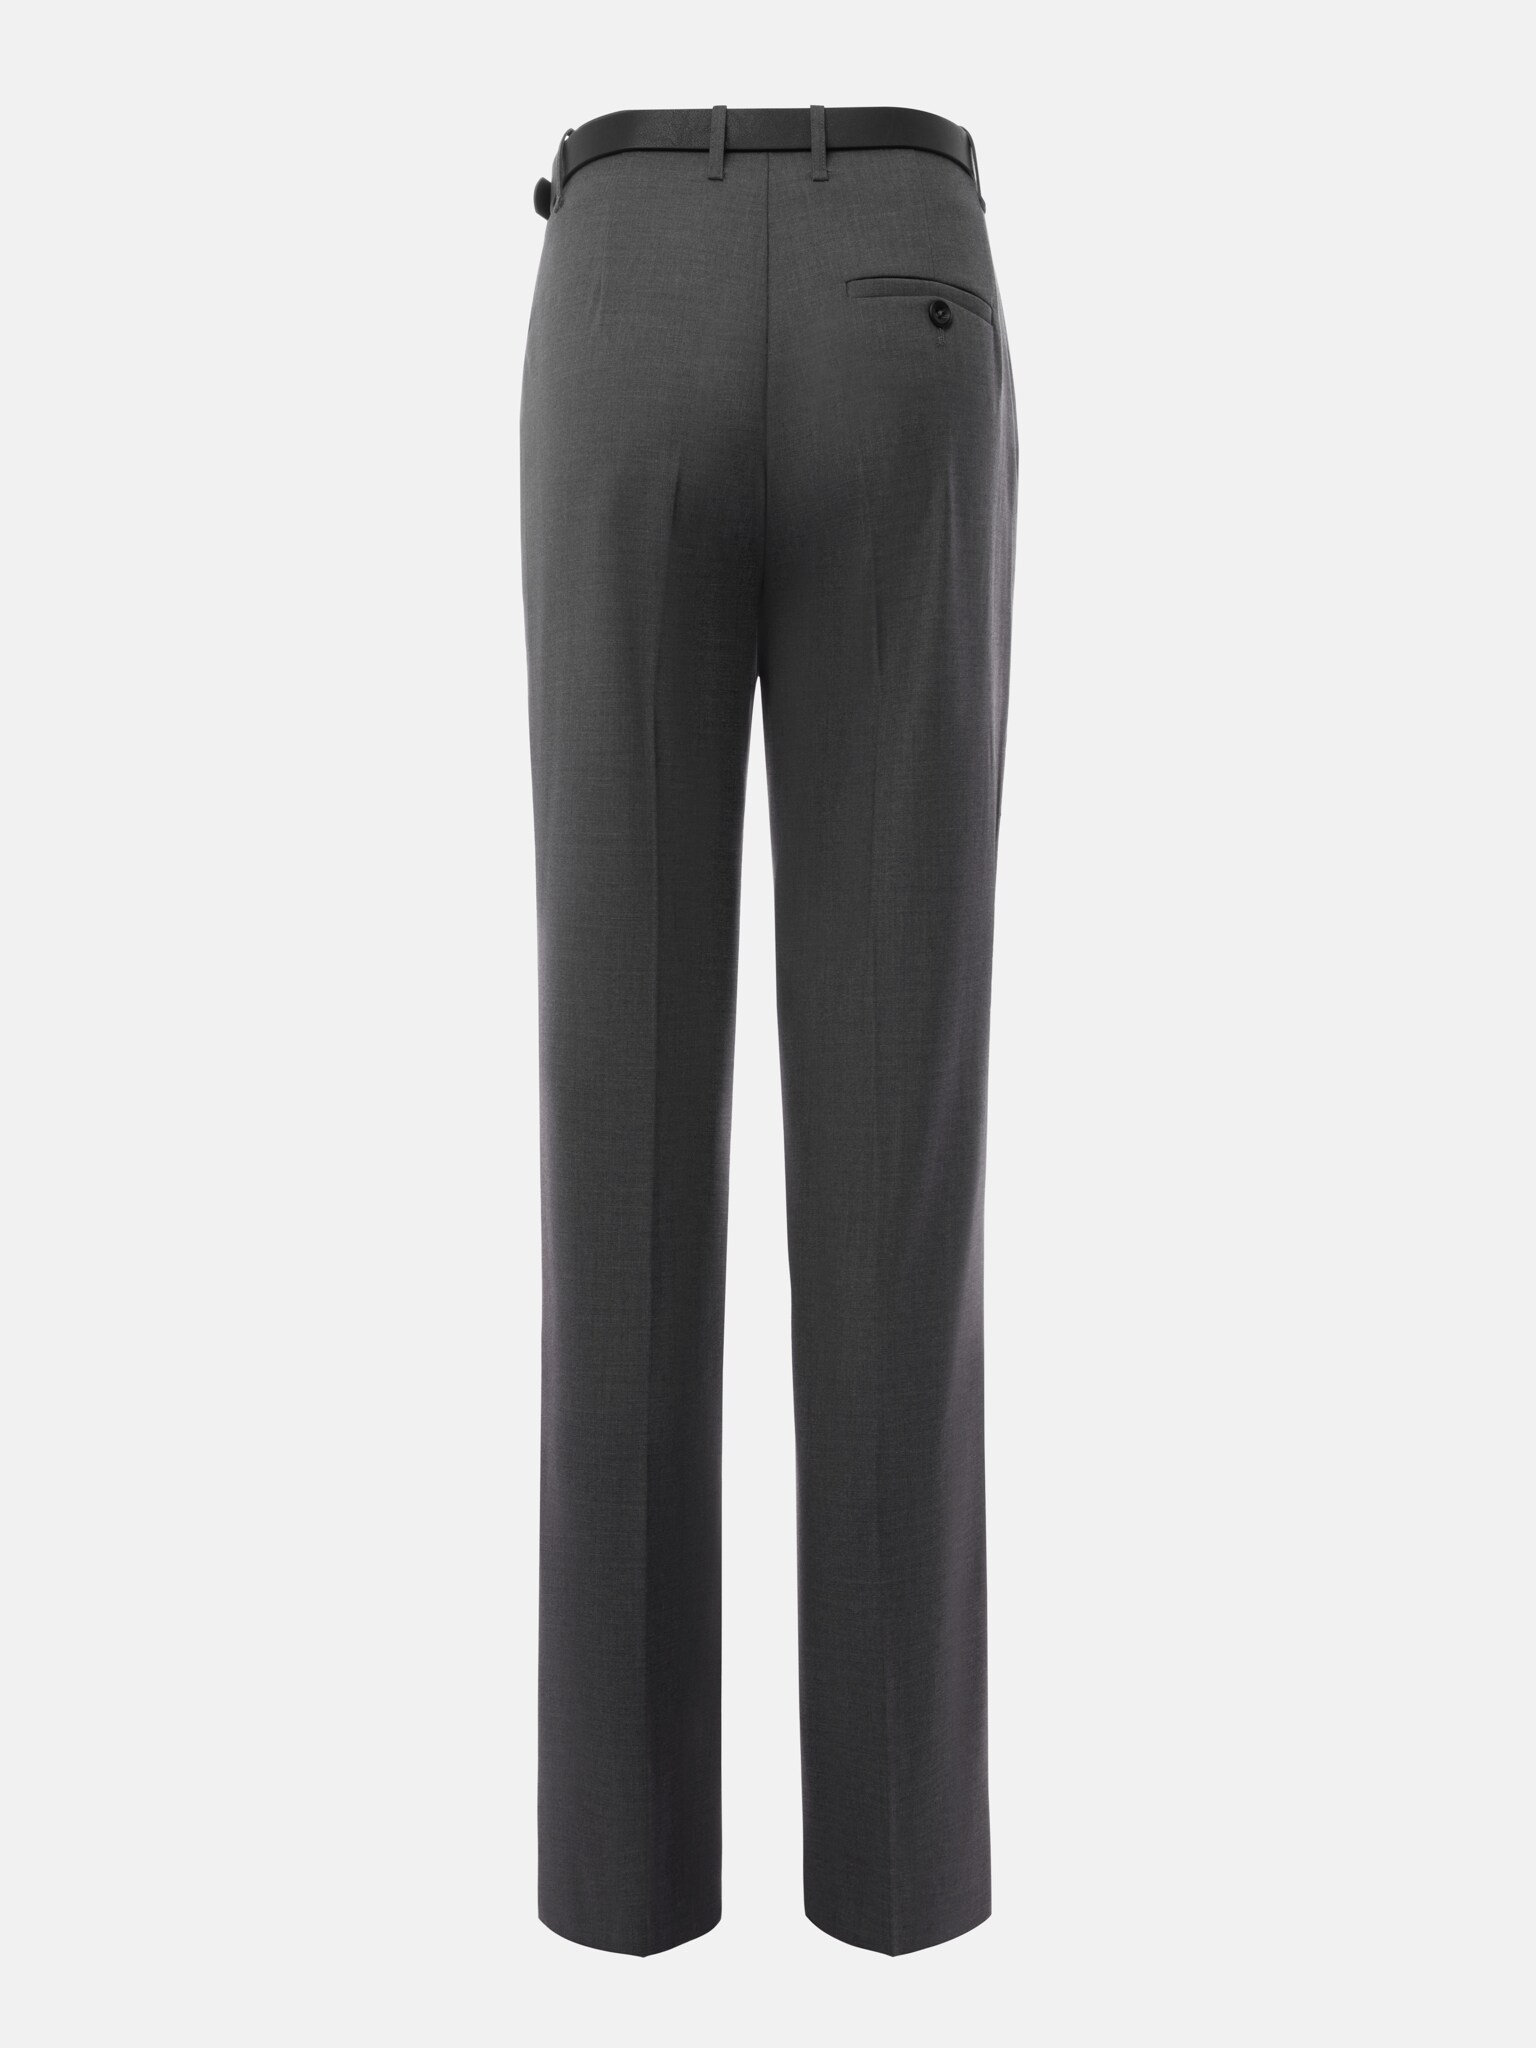 Укороченные брюки со стрелками и ремнем из экокожи :: LICHI - Onlinefashion store